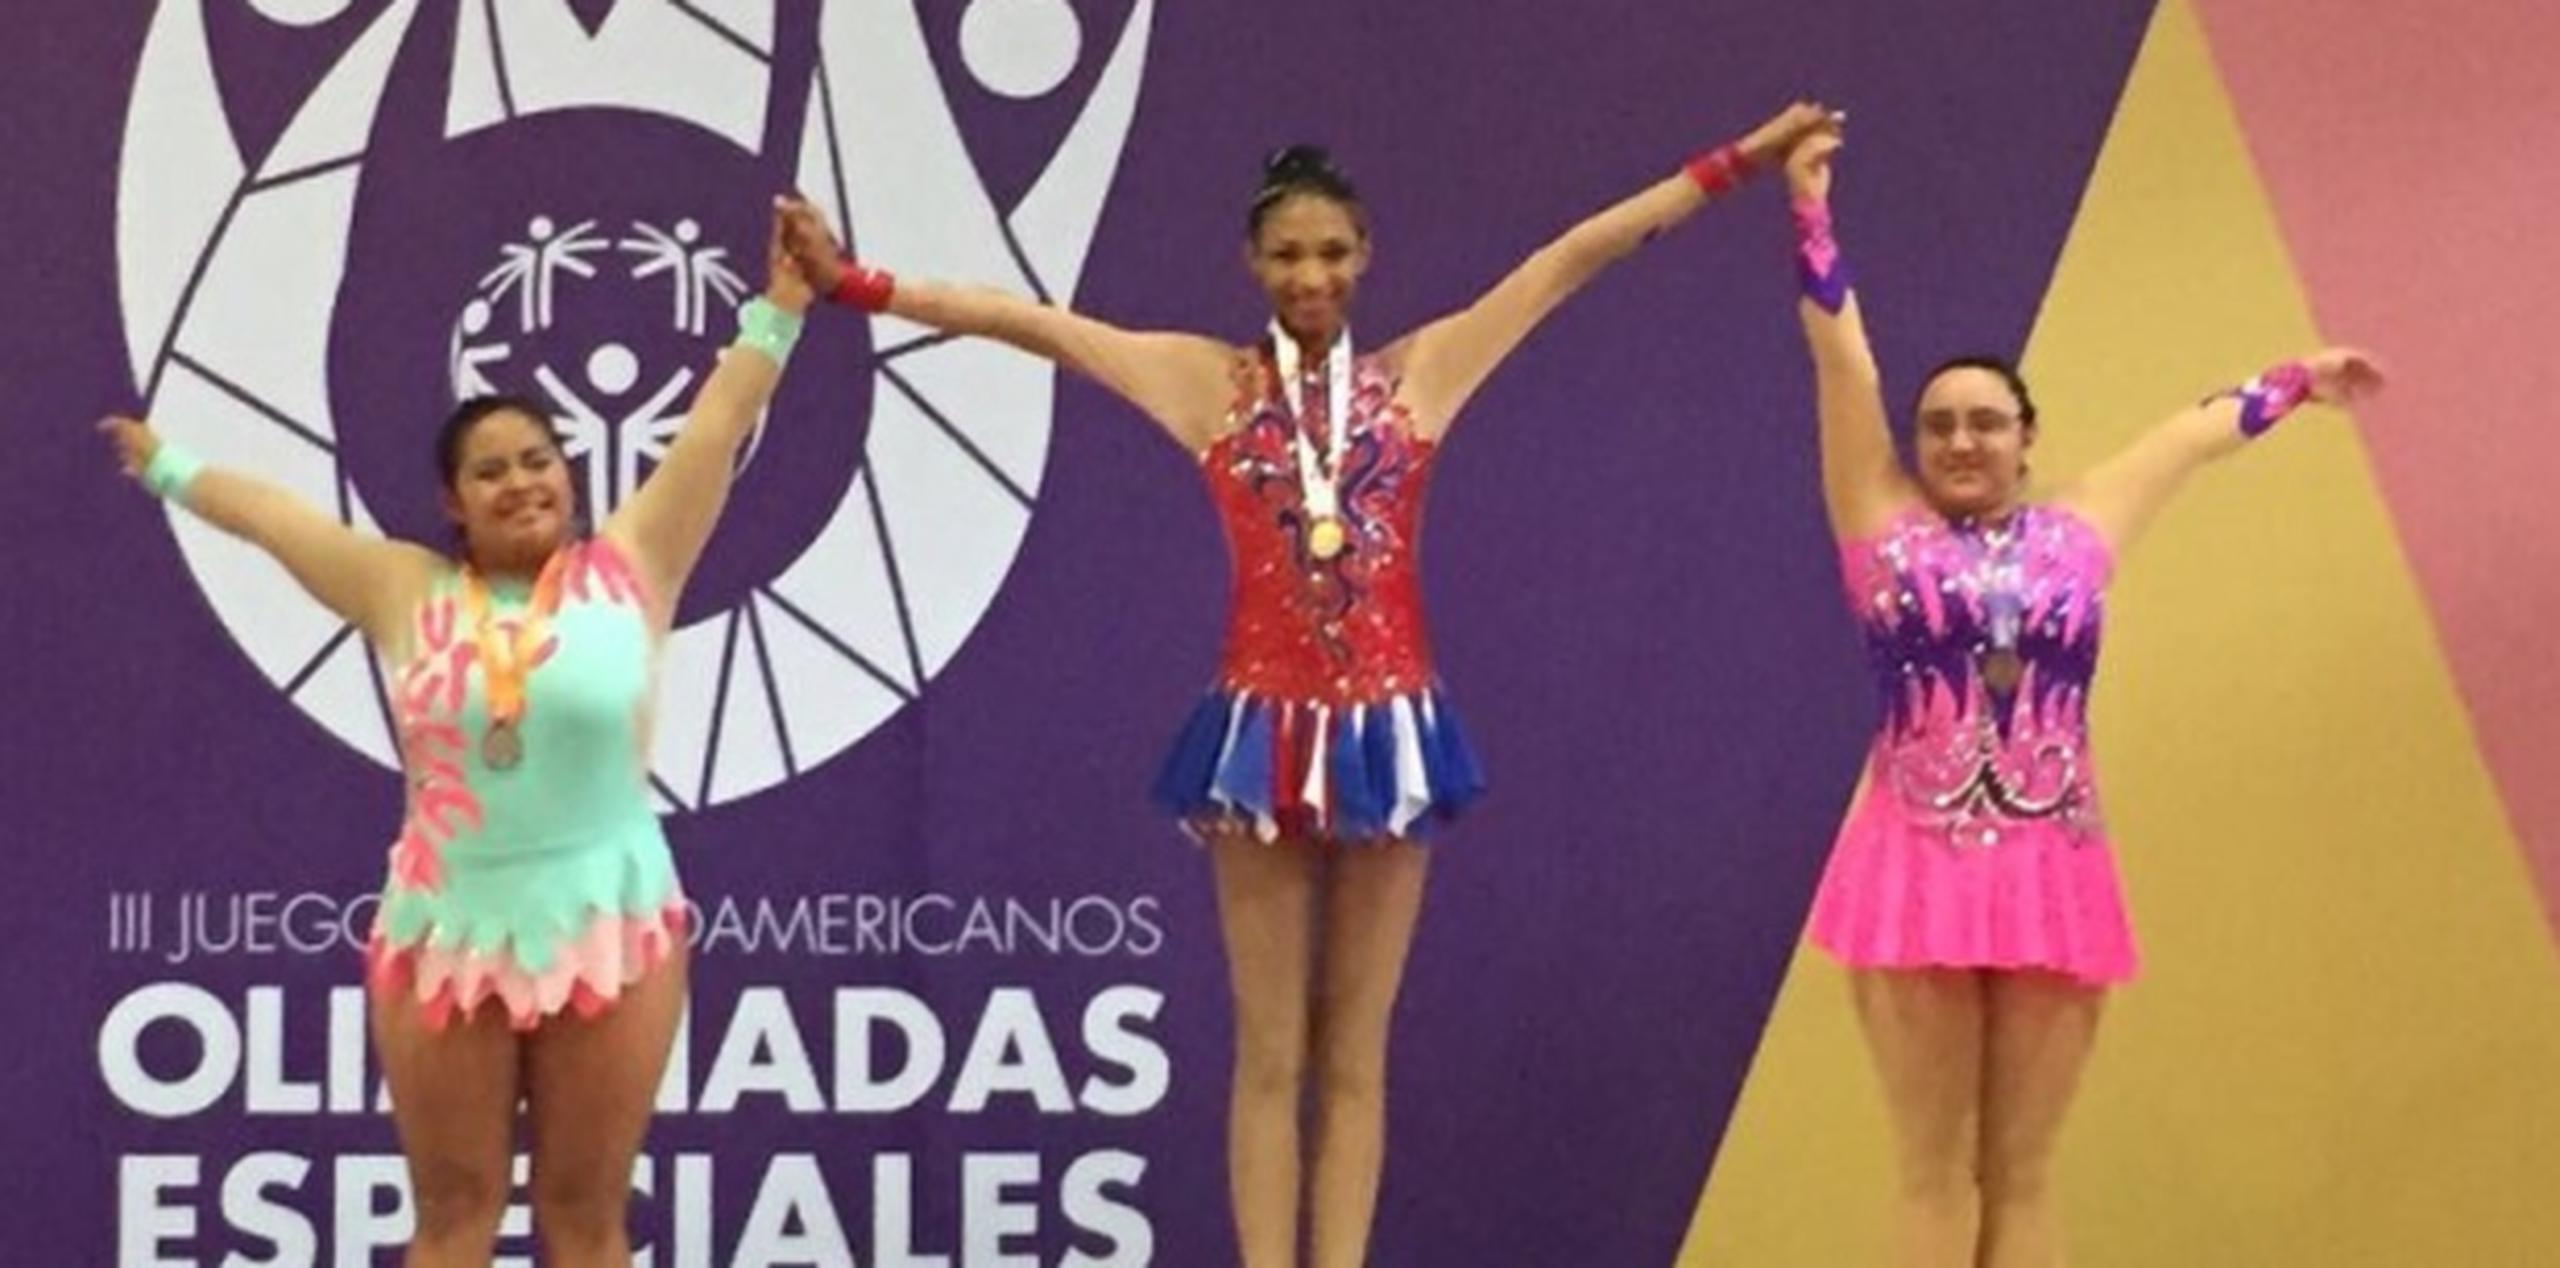 En la modalidad de aros en la gimnasia rítmica, Daimy Aza y Ashley Pérez dominaron el podio latinoamericano al ganar la medalla de oro y bronce. (Suministrada)